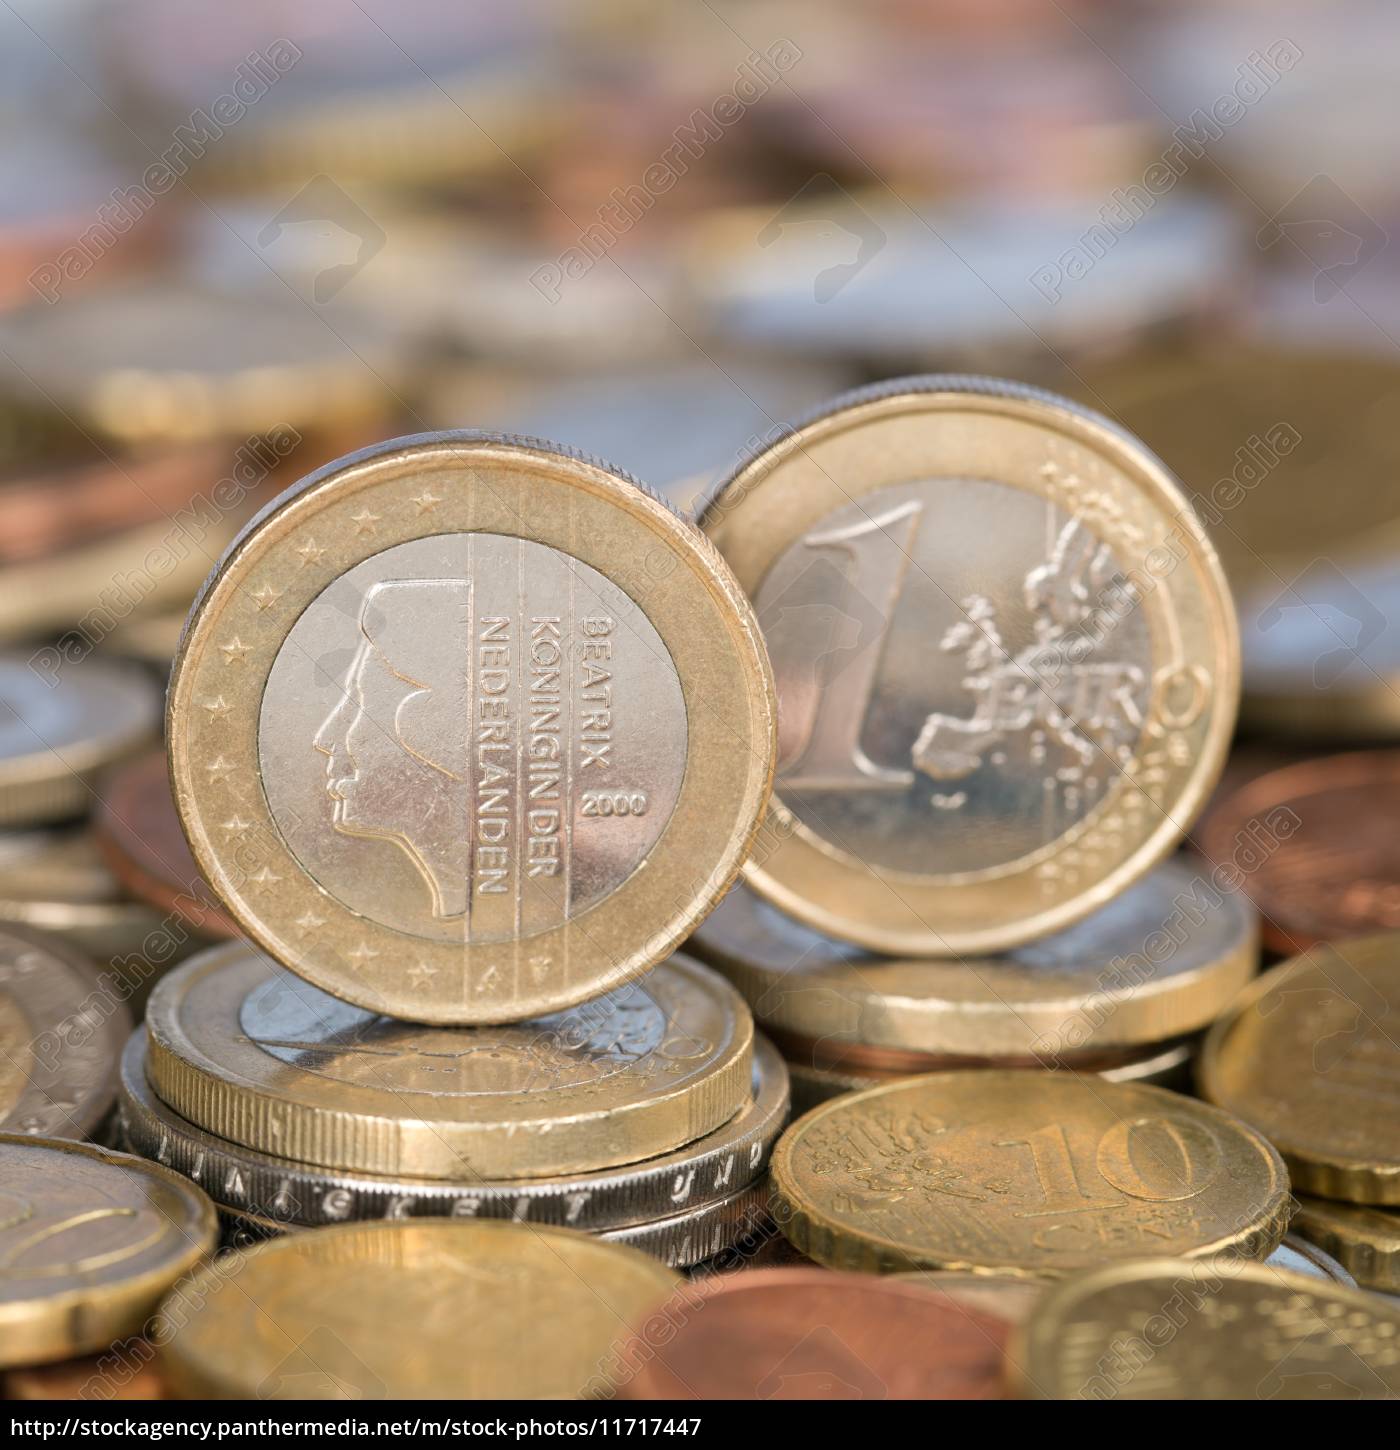 1 Euro Münze aus Niederlande - Lizenzfreies Bild - #11717447